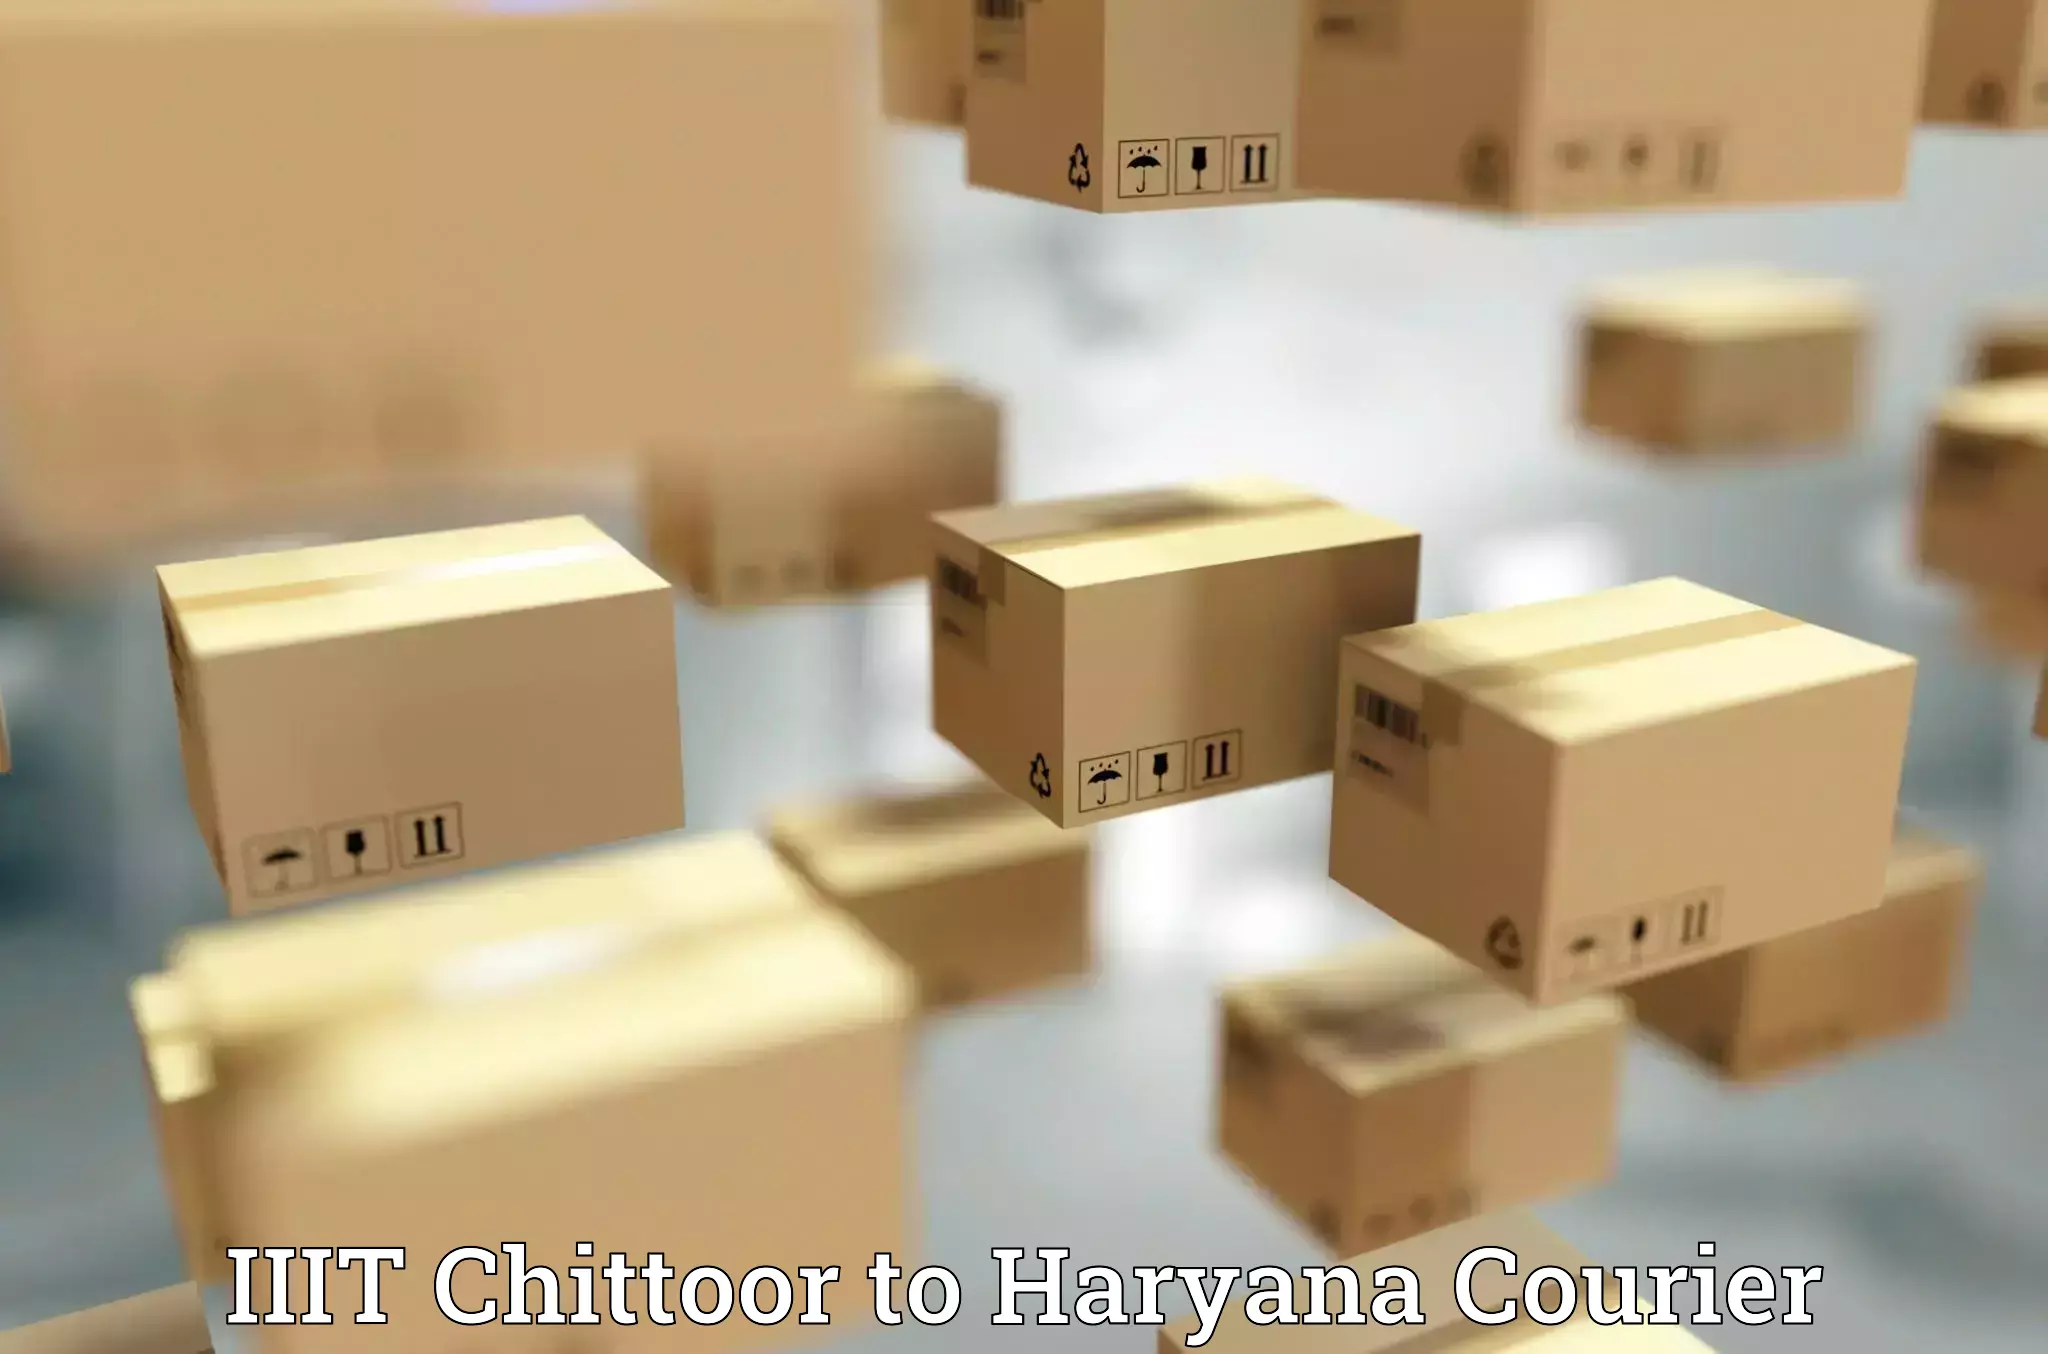 Comprehensive logistics solutions in IIIT Chittoor to Gurugram